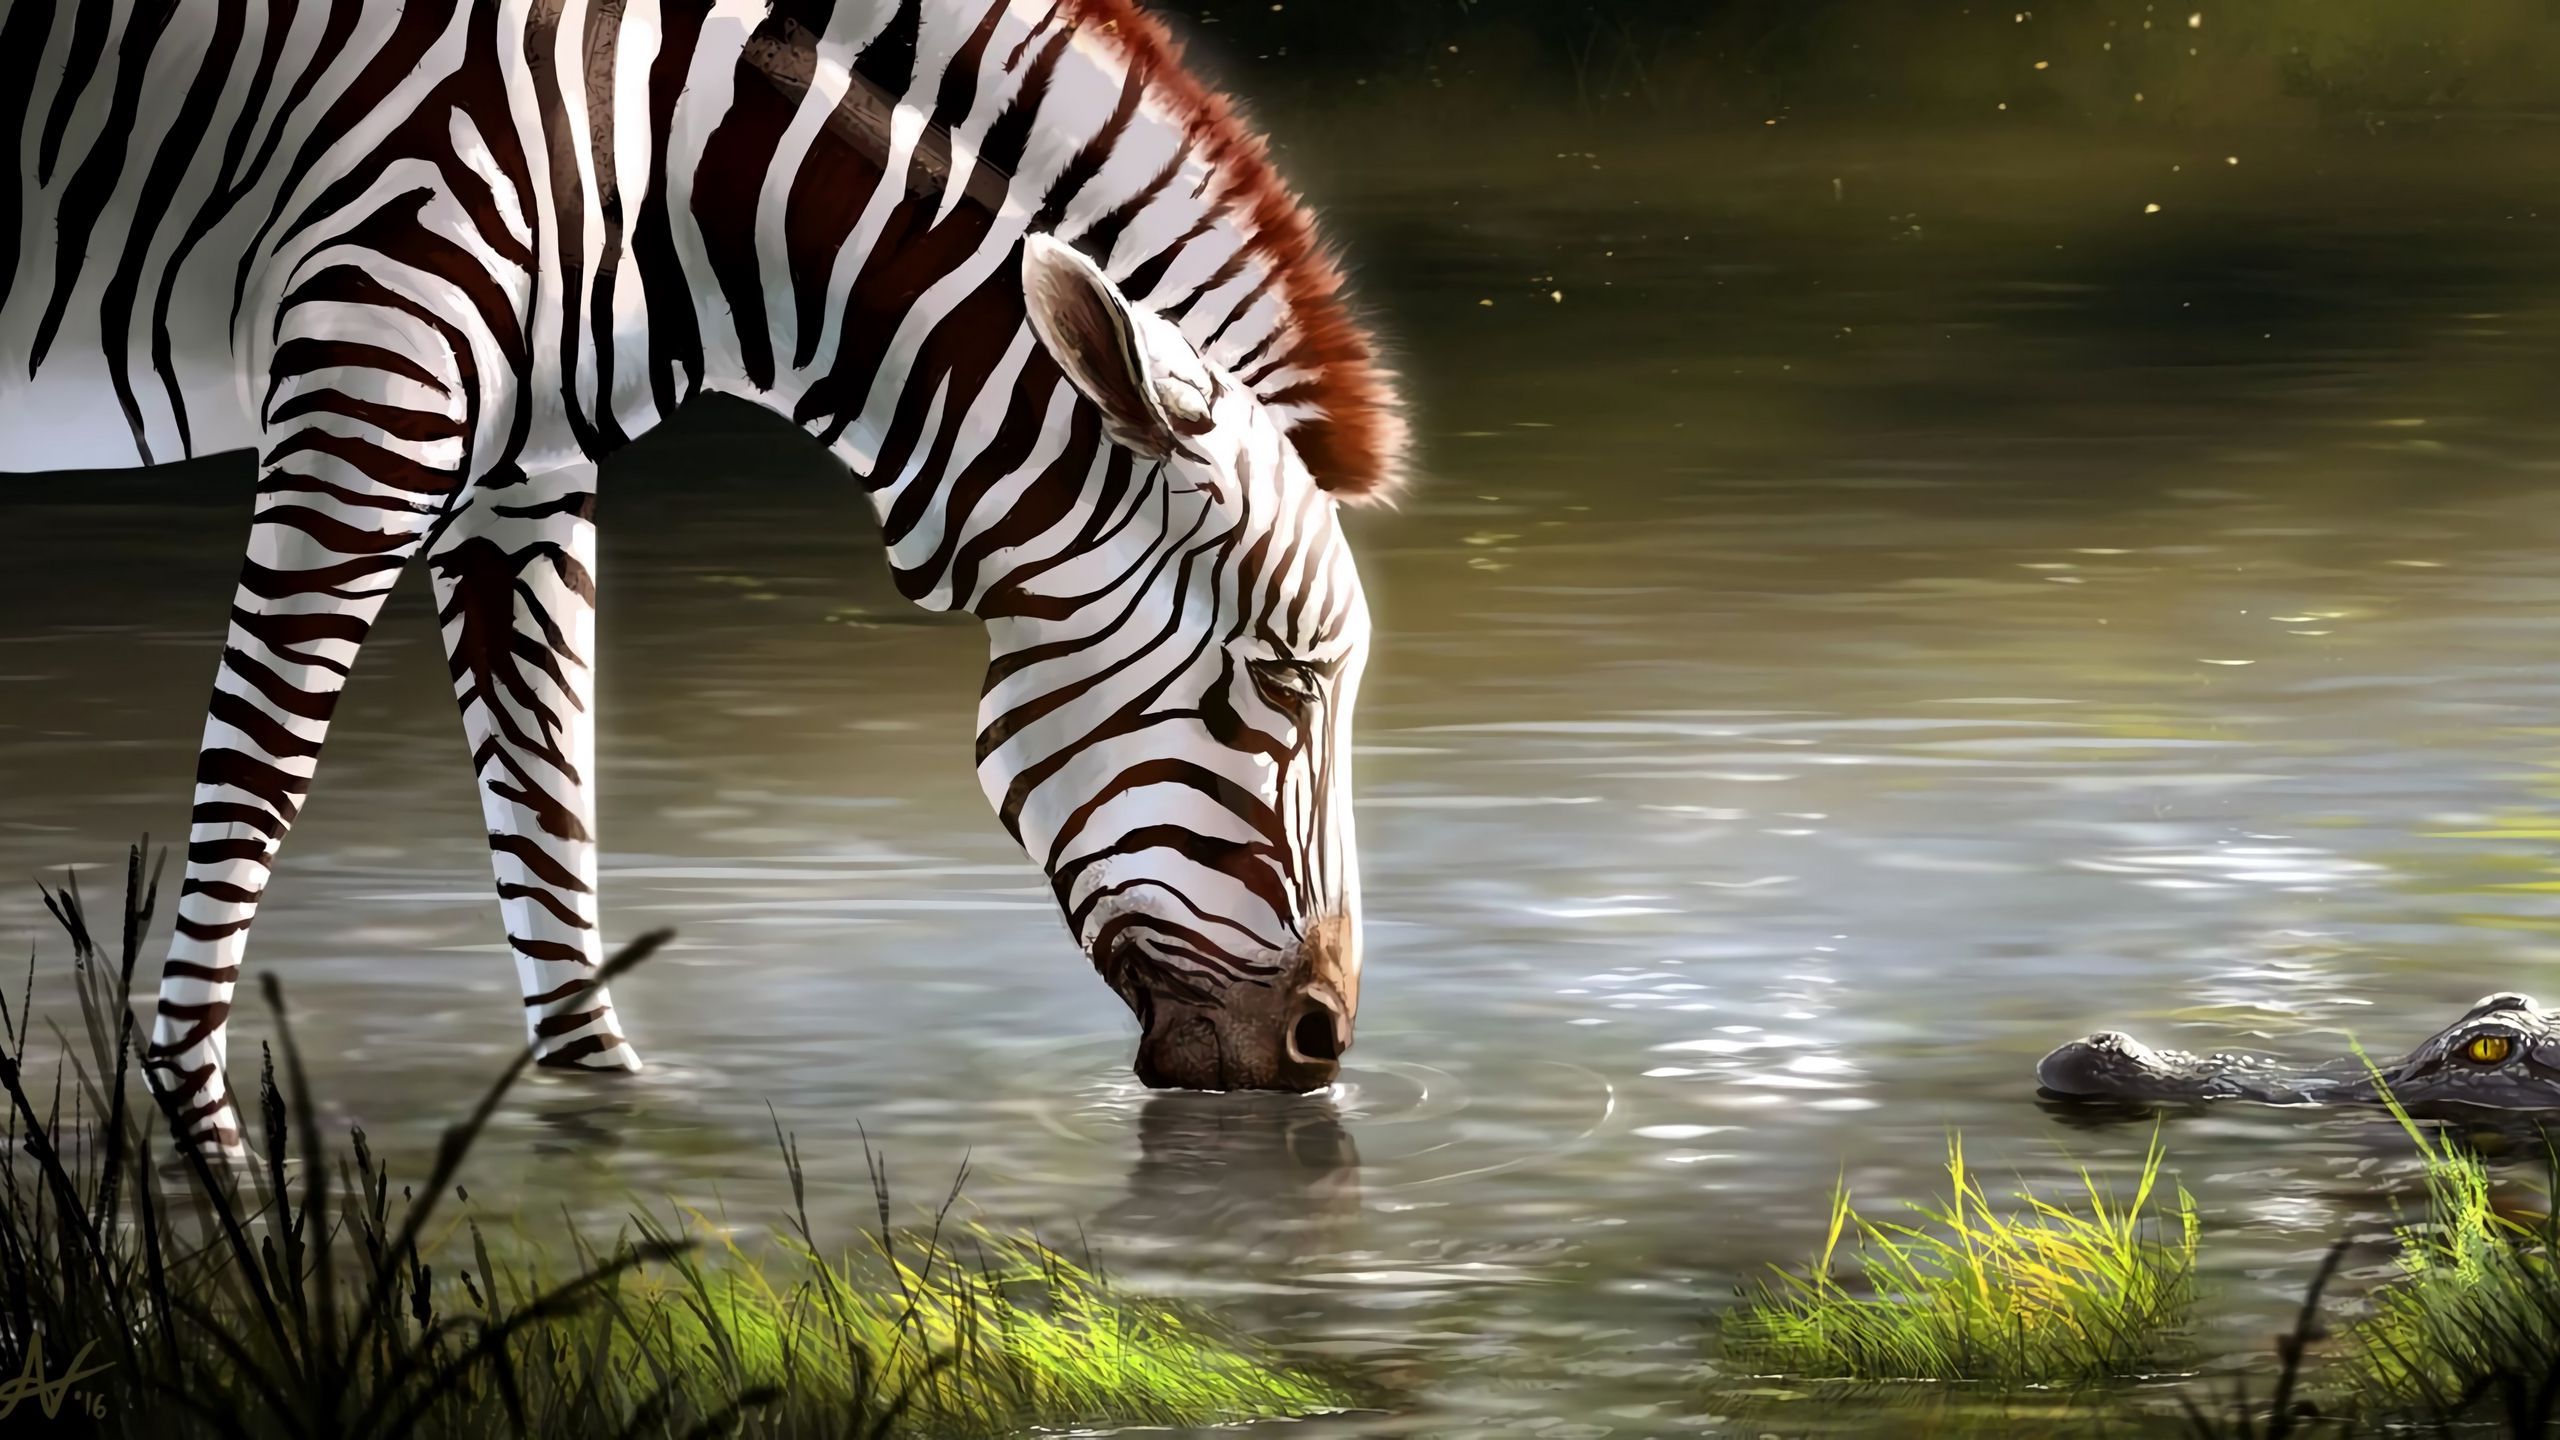 Download wallpaper 2560x1440 zebra, lake, art, animal, wildlife